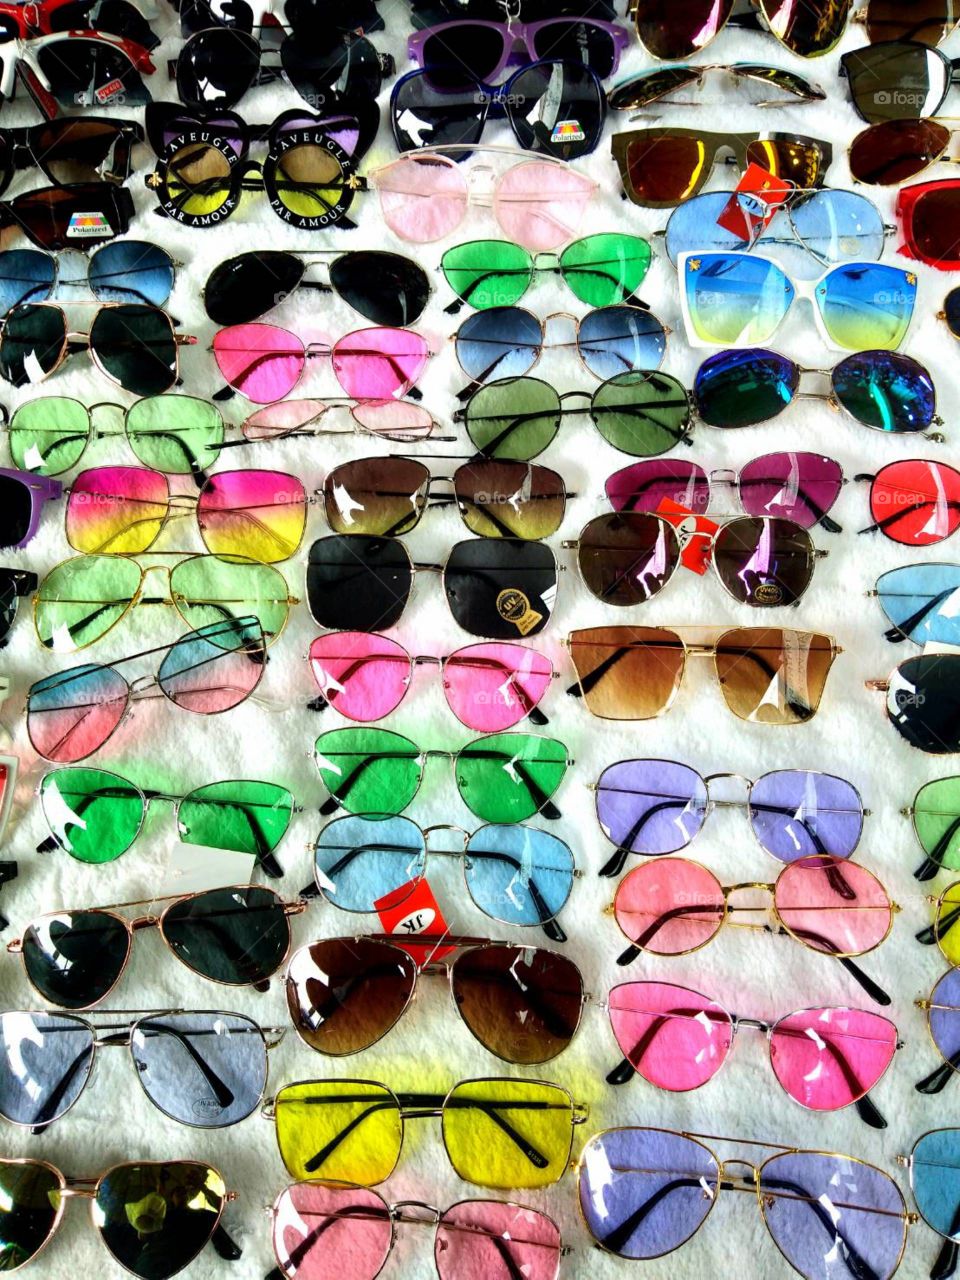 Colorful Glasses shop in JJ market.